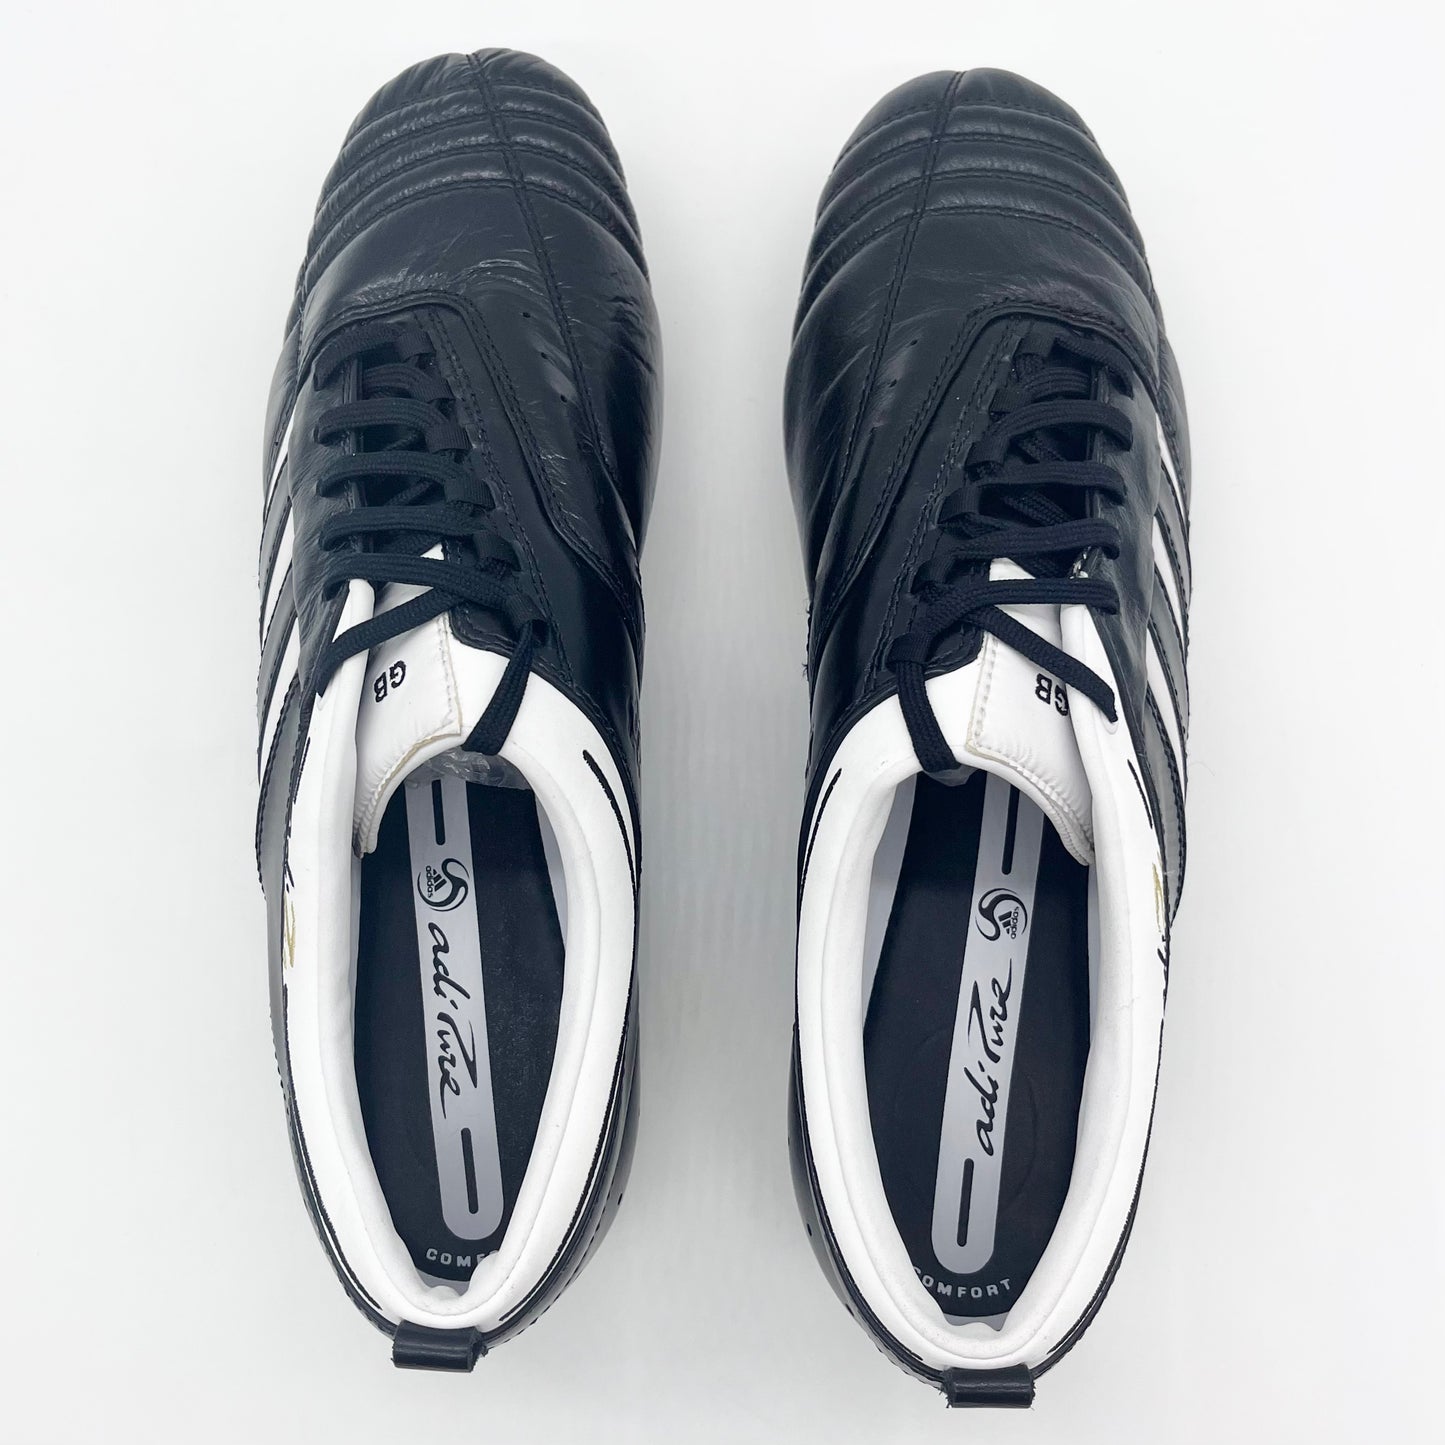 Adidas AdiPure II, edición de Gareth Barry Match